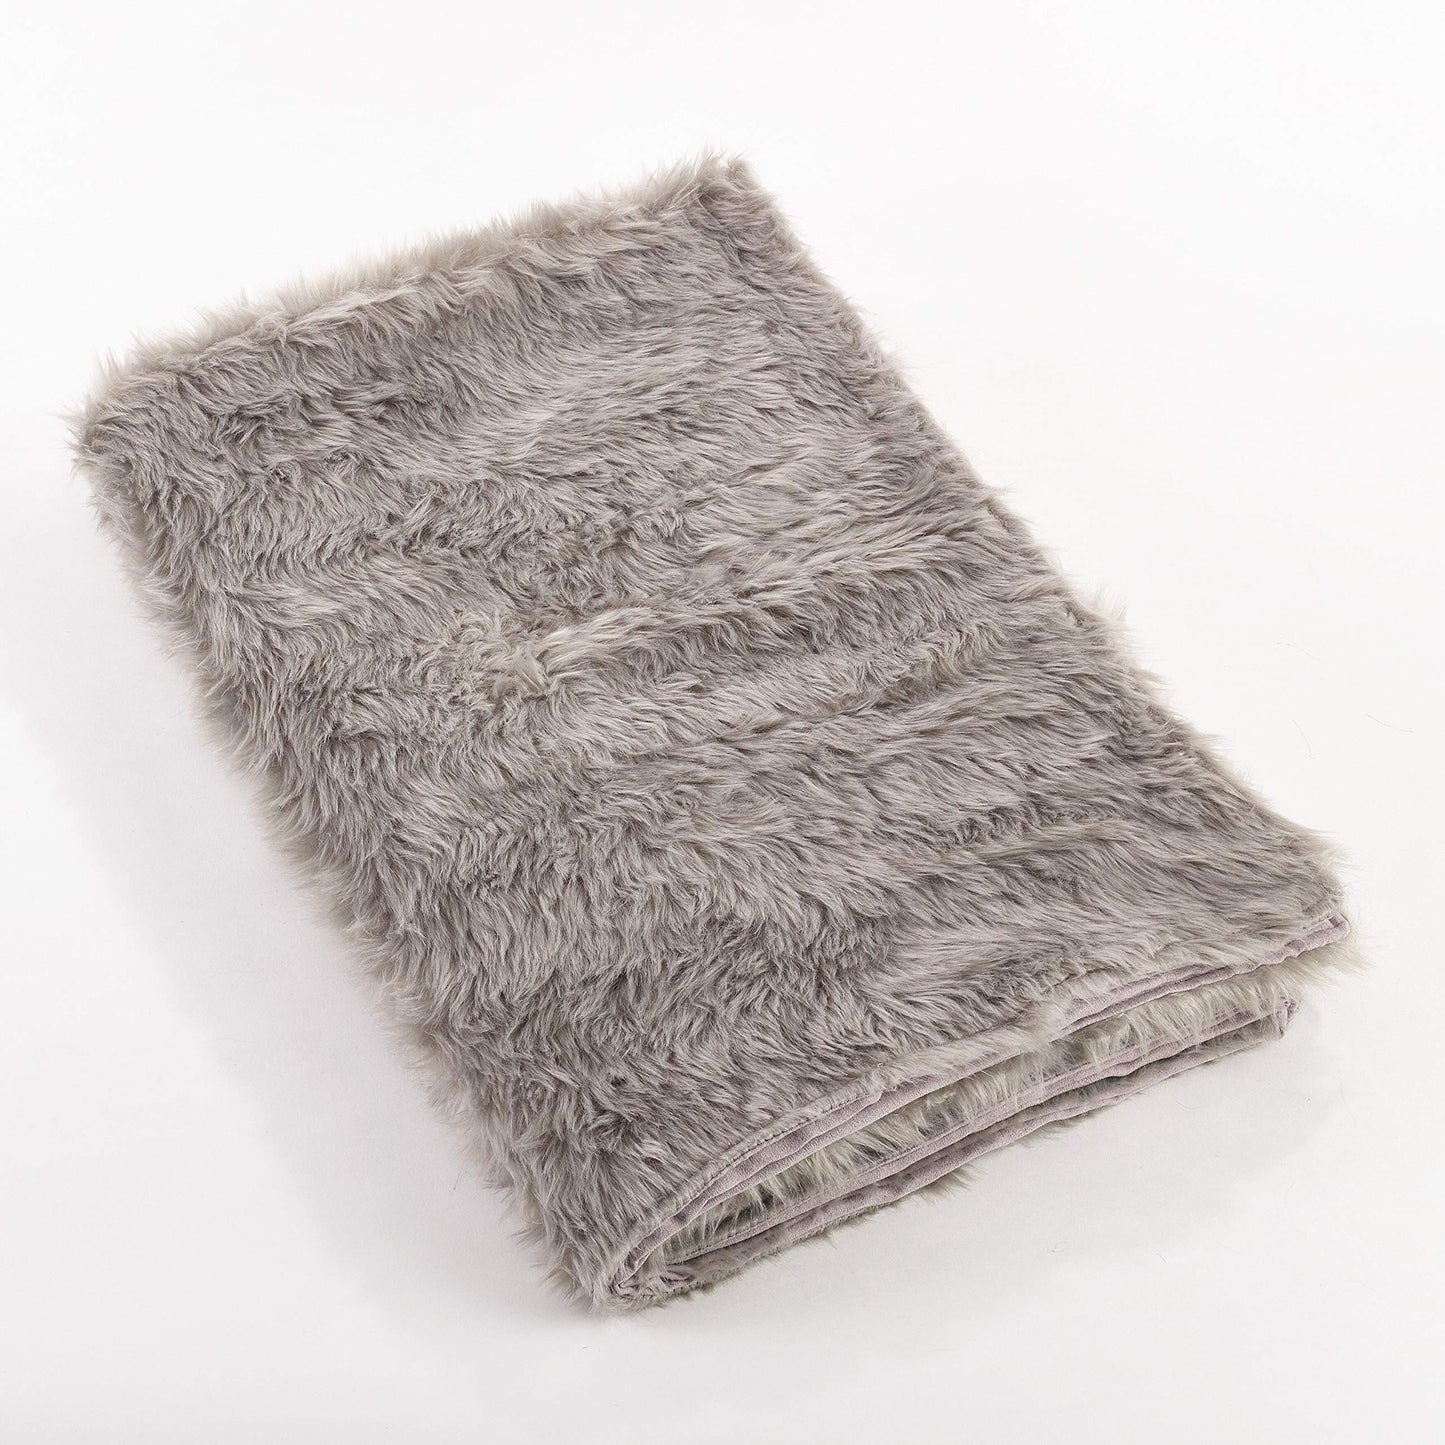 Fennco Styles Juneau Faux Fur Throw Blanket - 50" W x 60" L